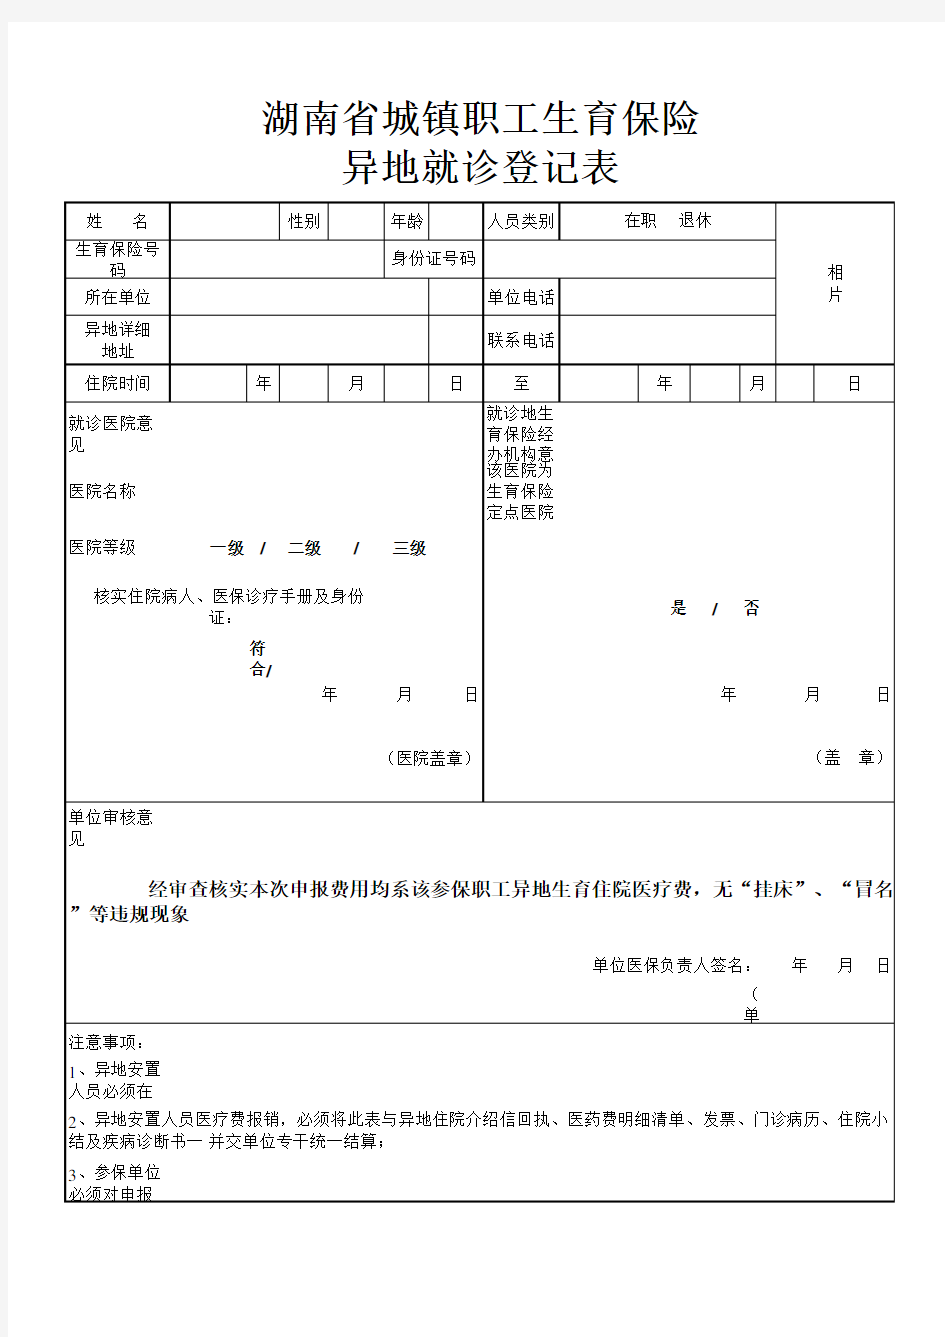 湖南省城镇职工生育保险异地就诊登记表